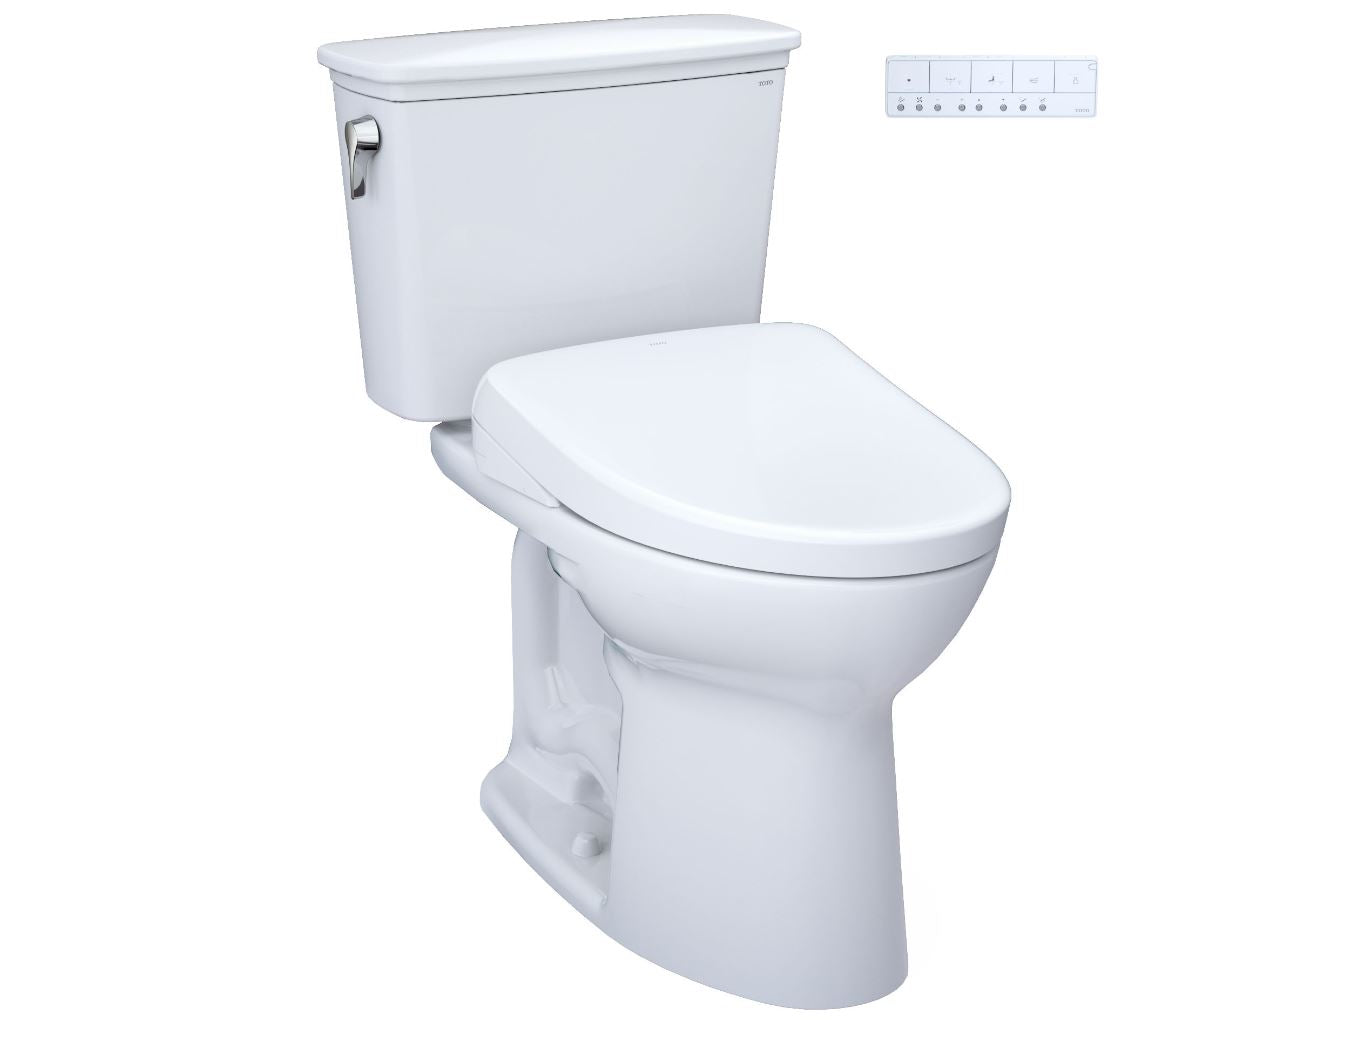 Toilette transitionnelle en deux parties à hauteur universelle Toto Drake avec siège de bidet Washlet S7 - 1,28 GPF